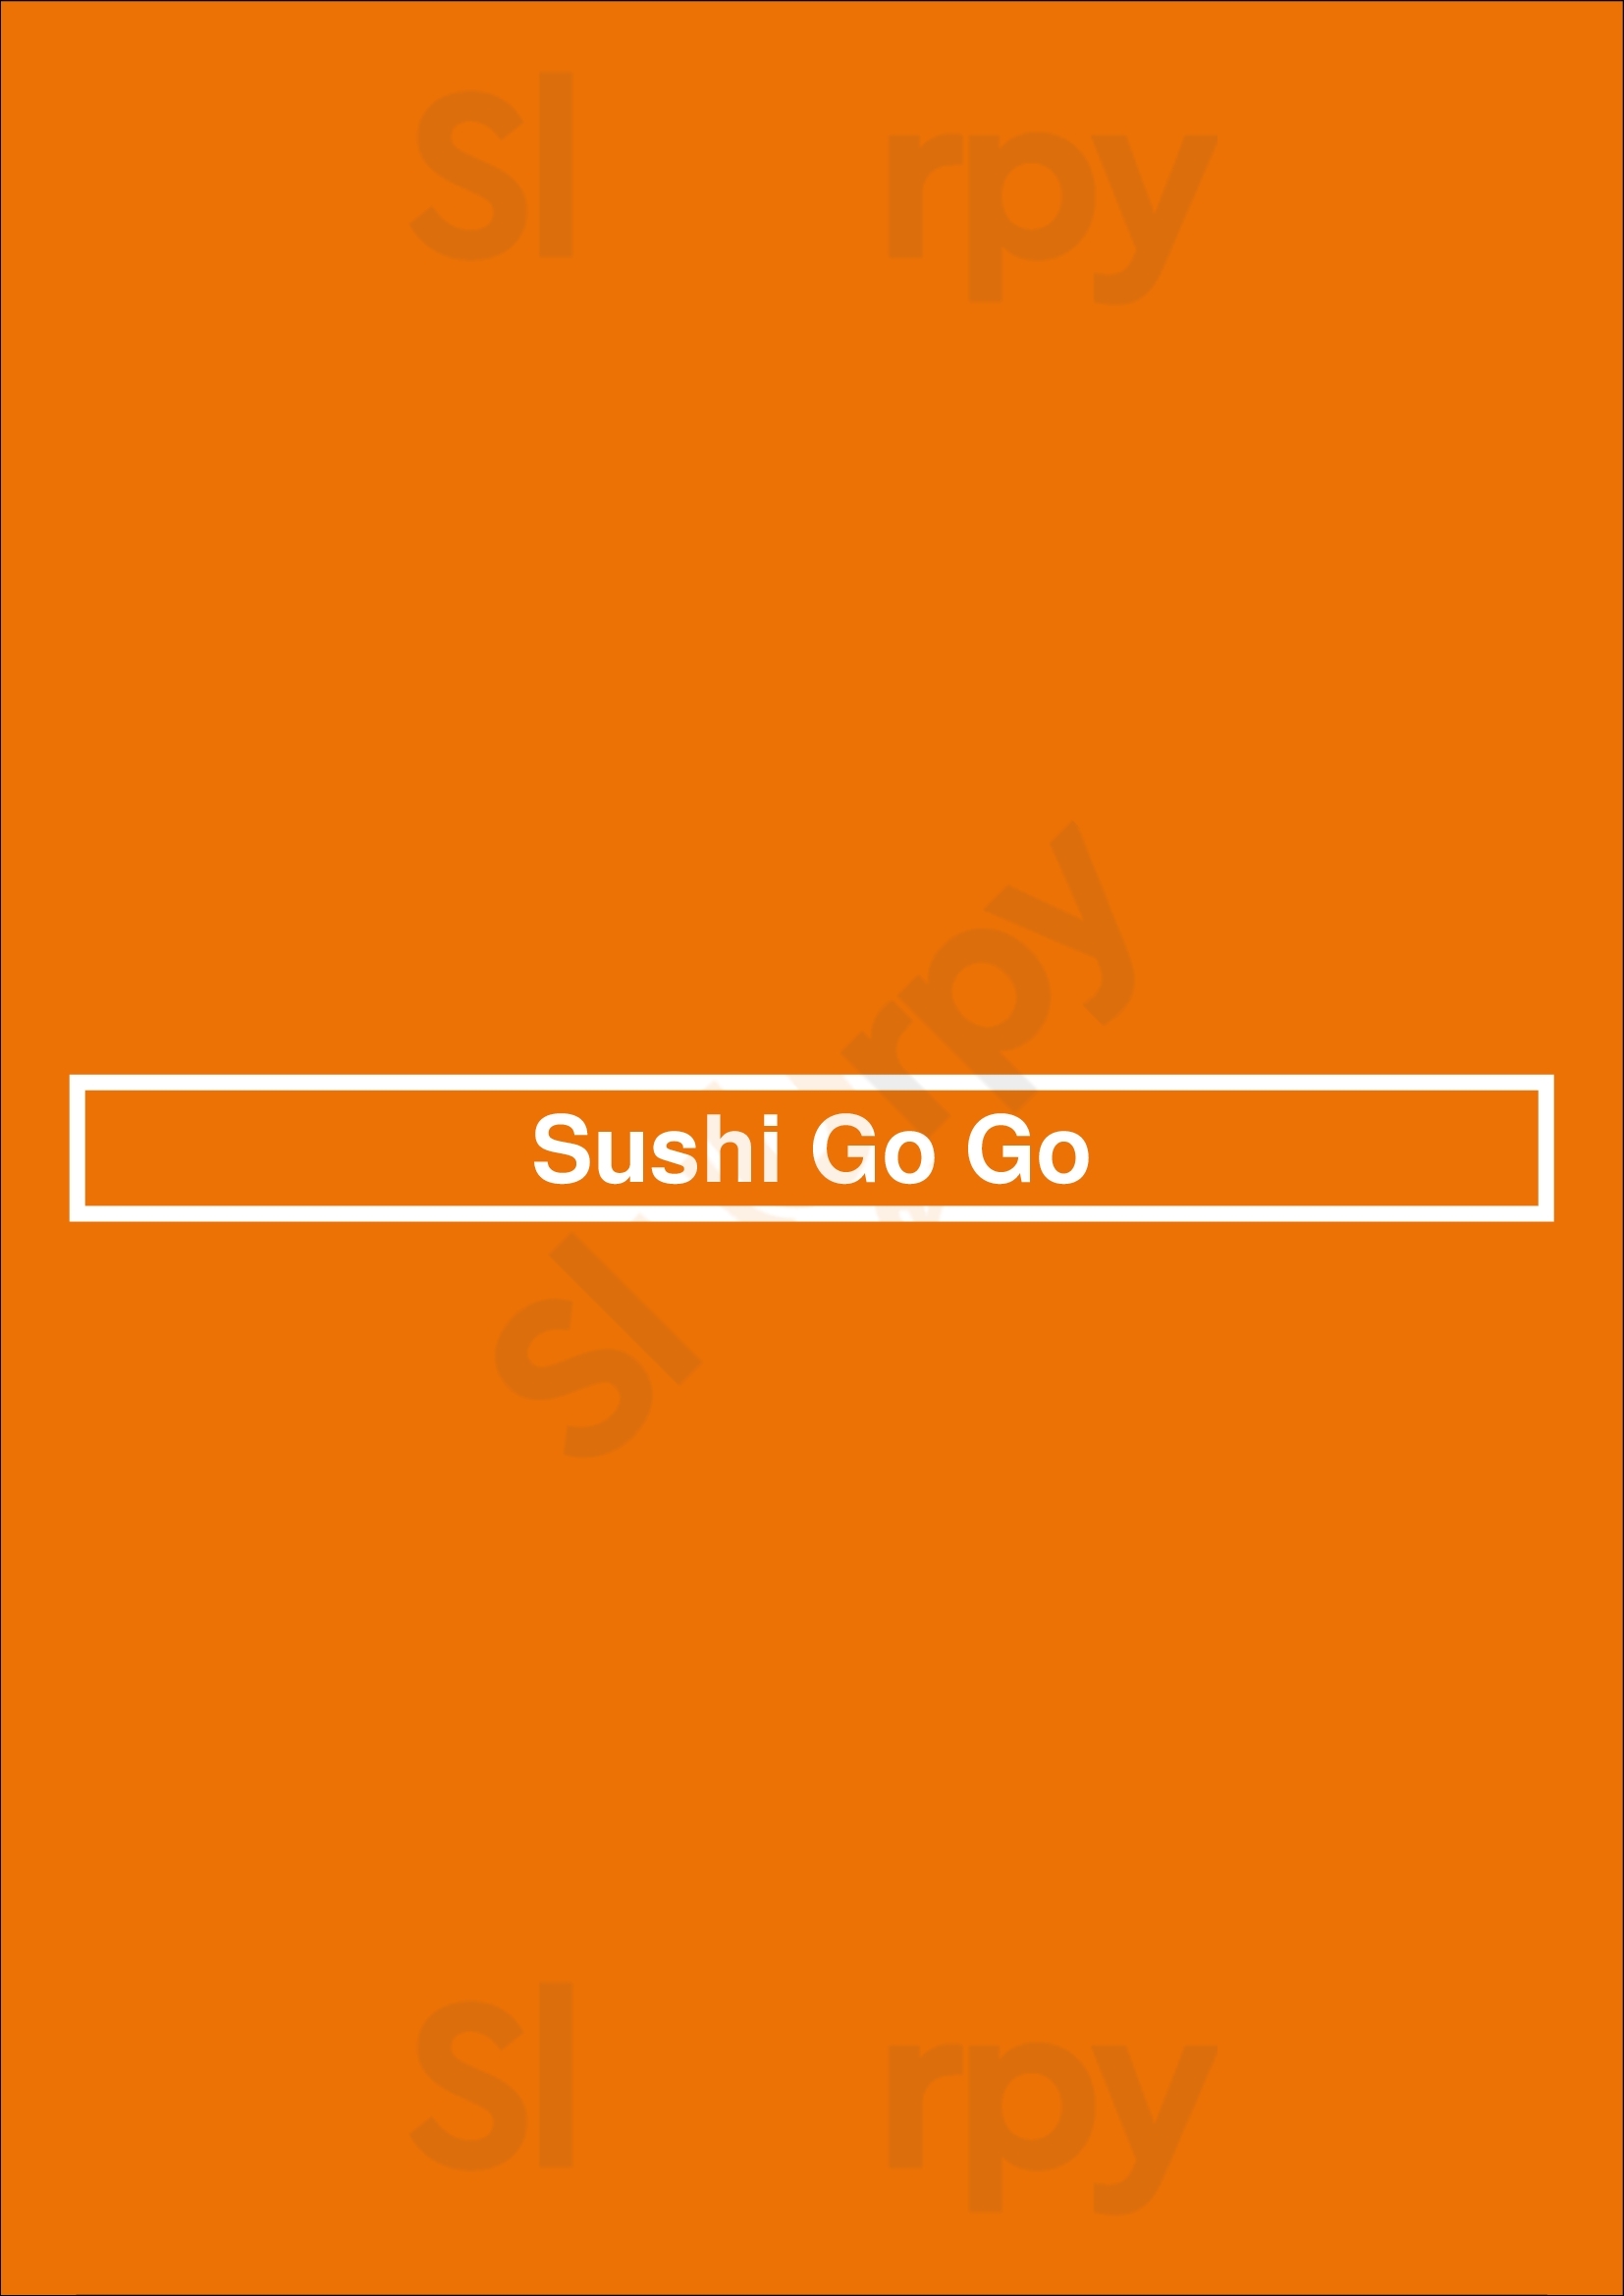 Sushi Go Go Oakland Menu - 1